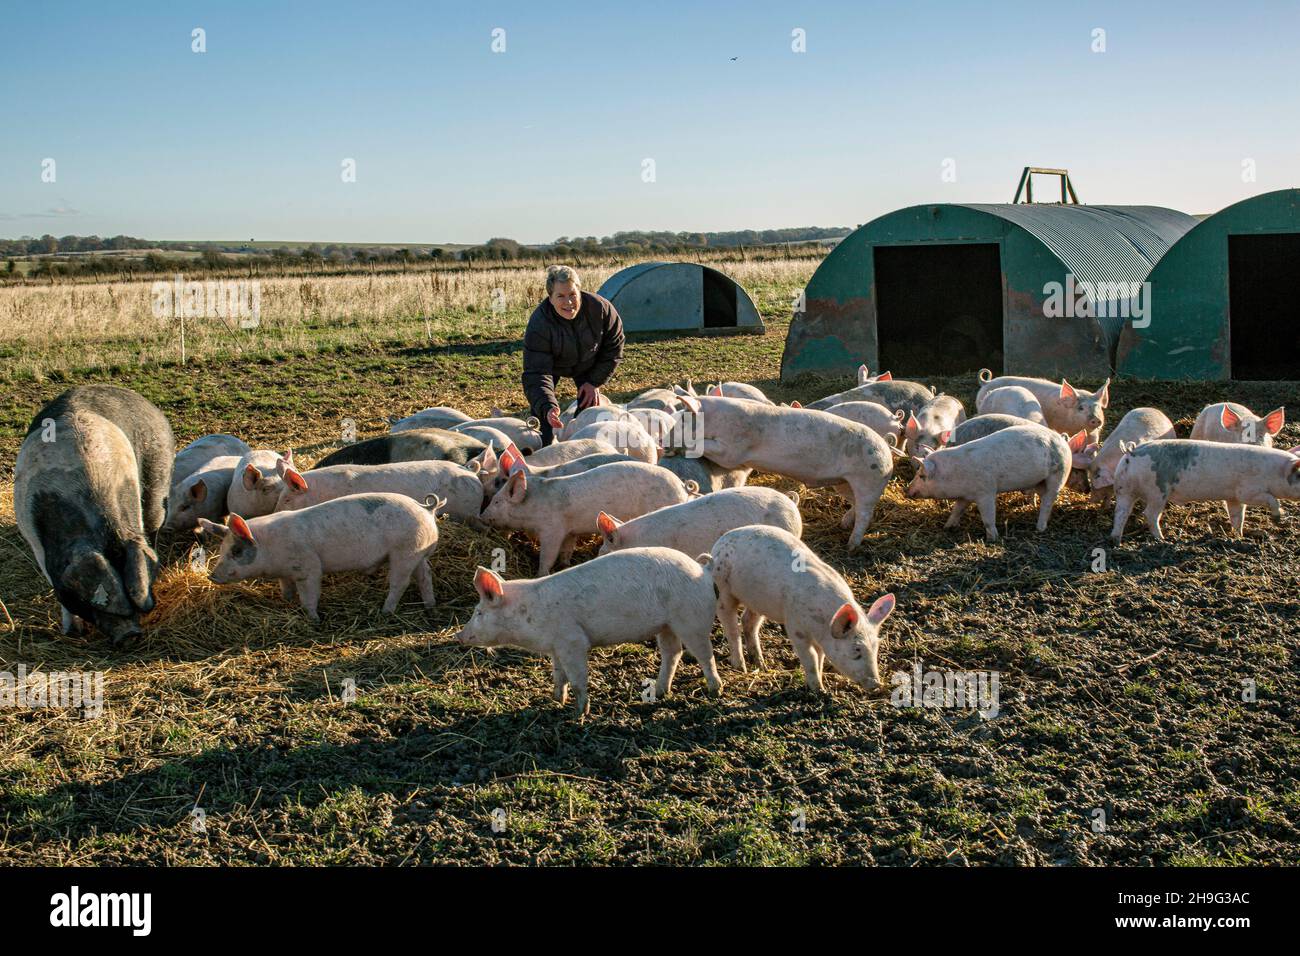 HELEN BROWNING, Directora Ejecutiva de la Asociación de Suelos y criadora de cerdos orgánicos en la granja Eastbrook Bishopstone , Reino Unido Foto de stock